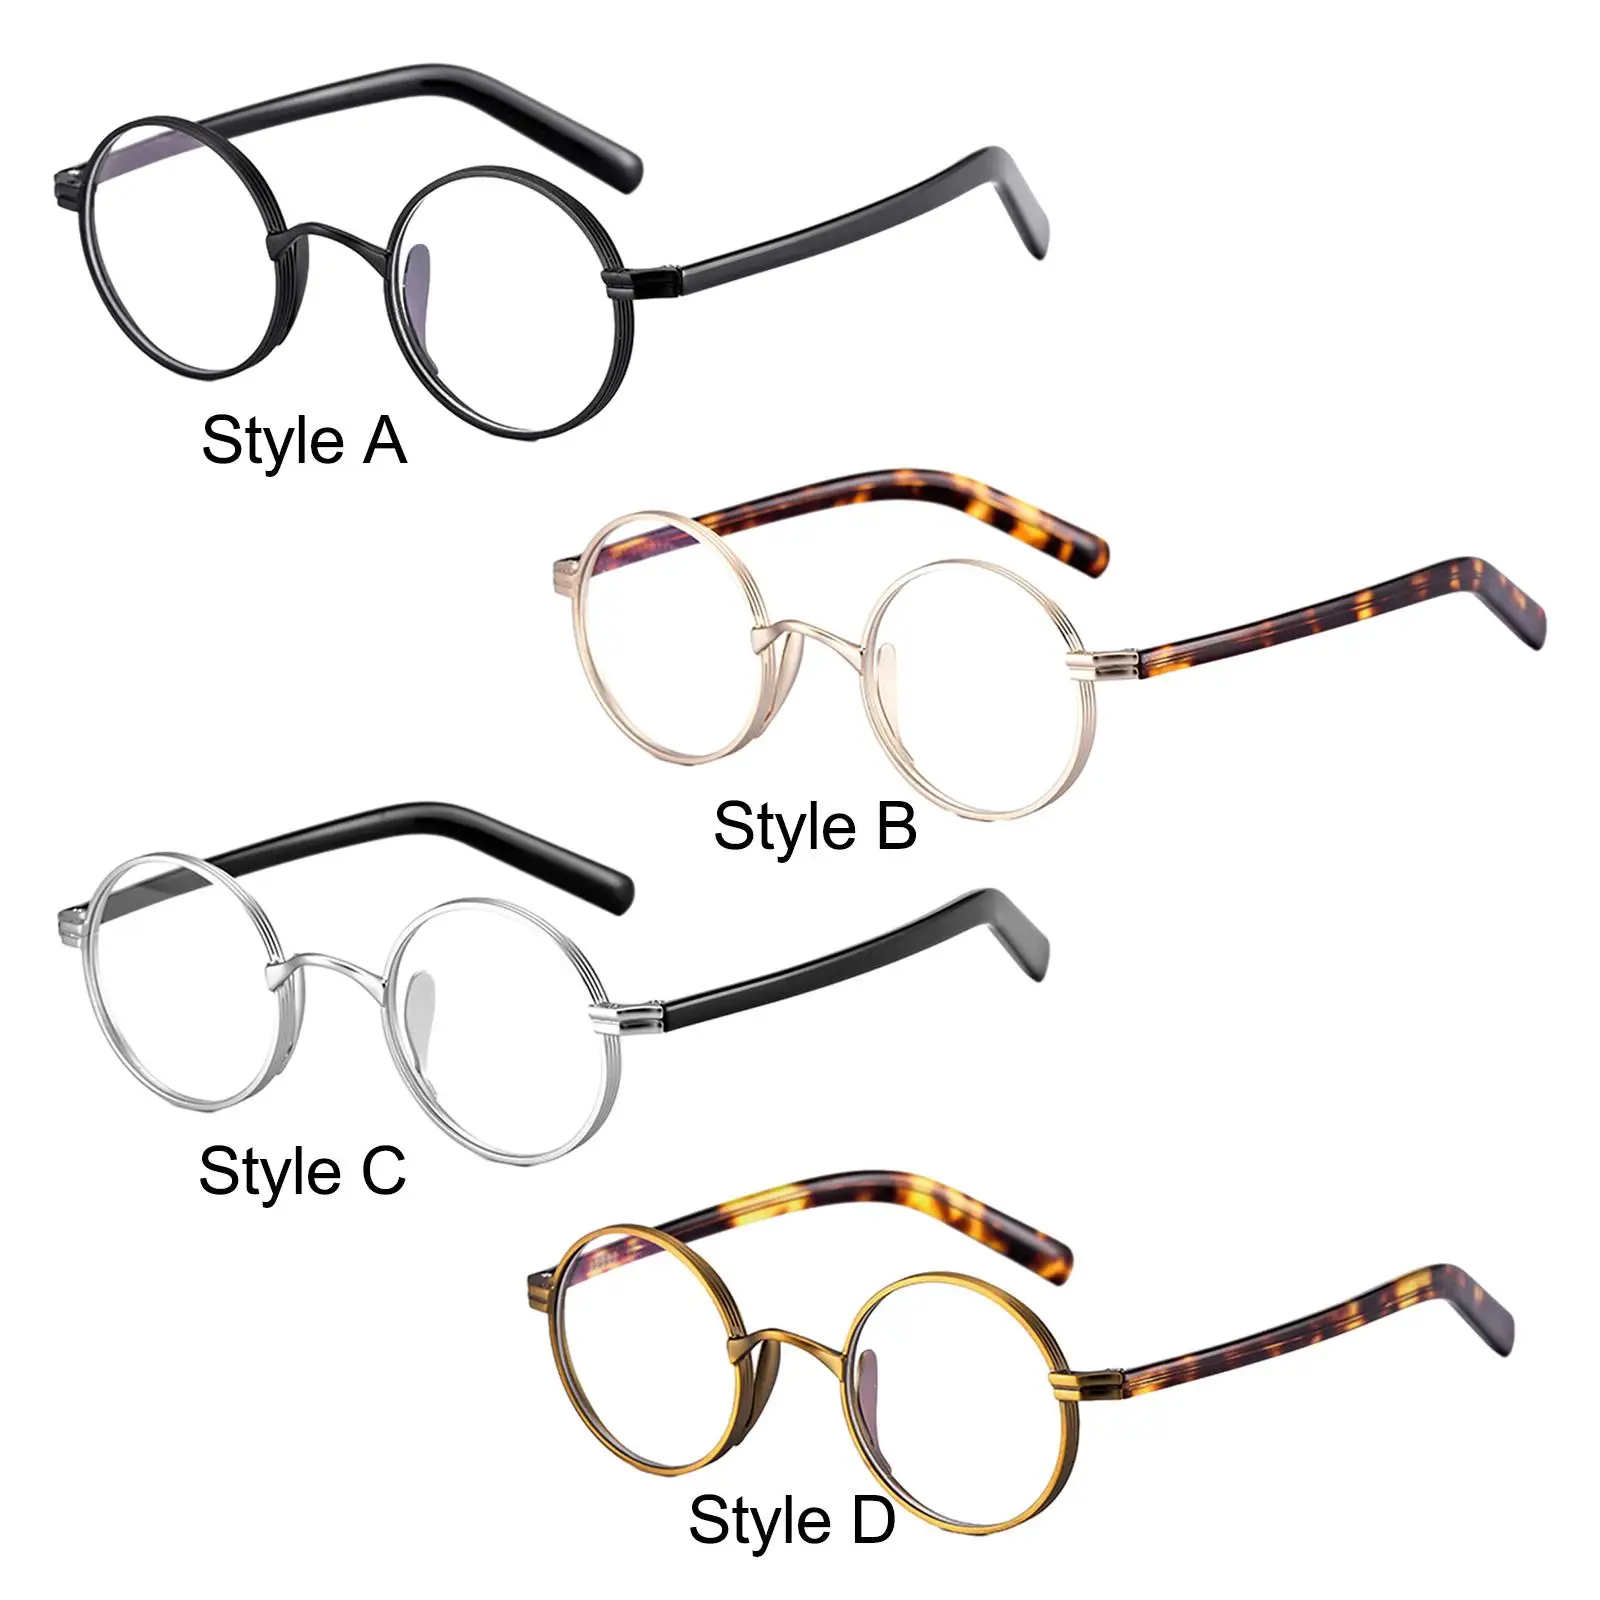 Glasses Frames Oval Oversized Lightweight for Men Women Classic Full Rim Titanium Alloy Eyeglass Frame Round Eyeglasses Frames